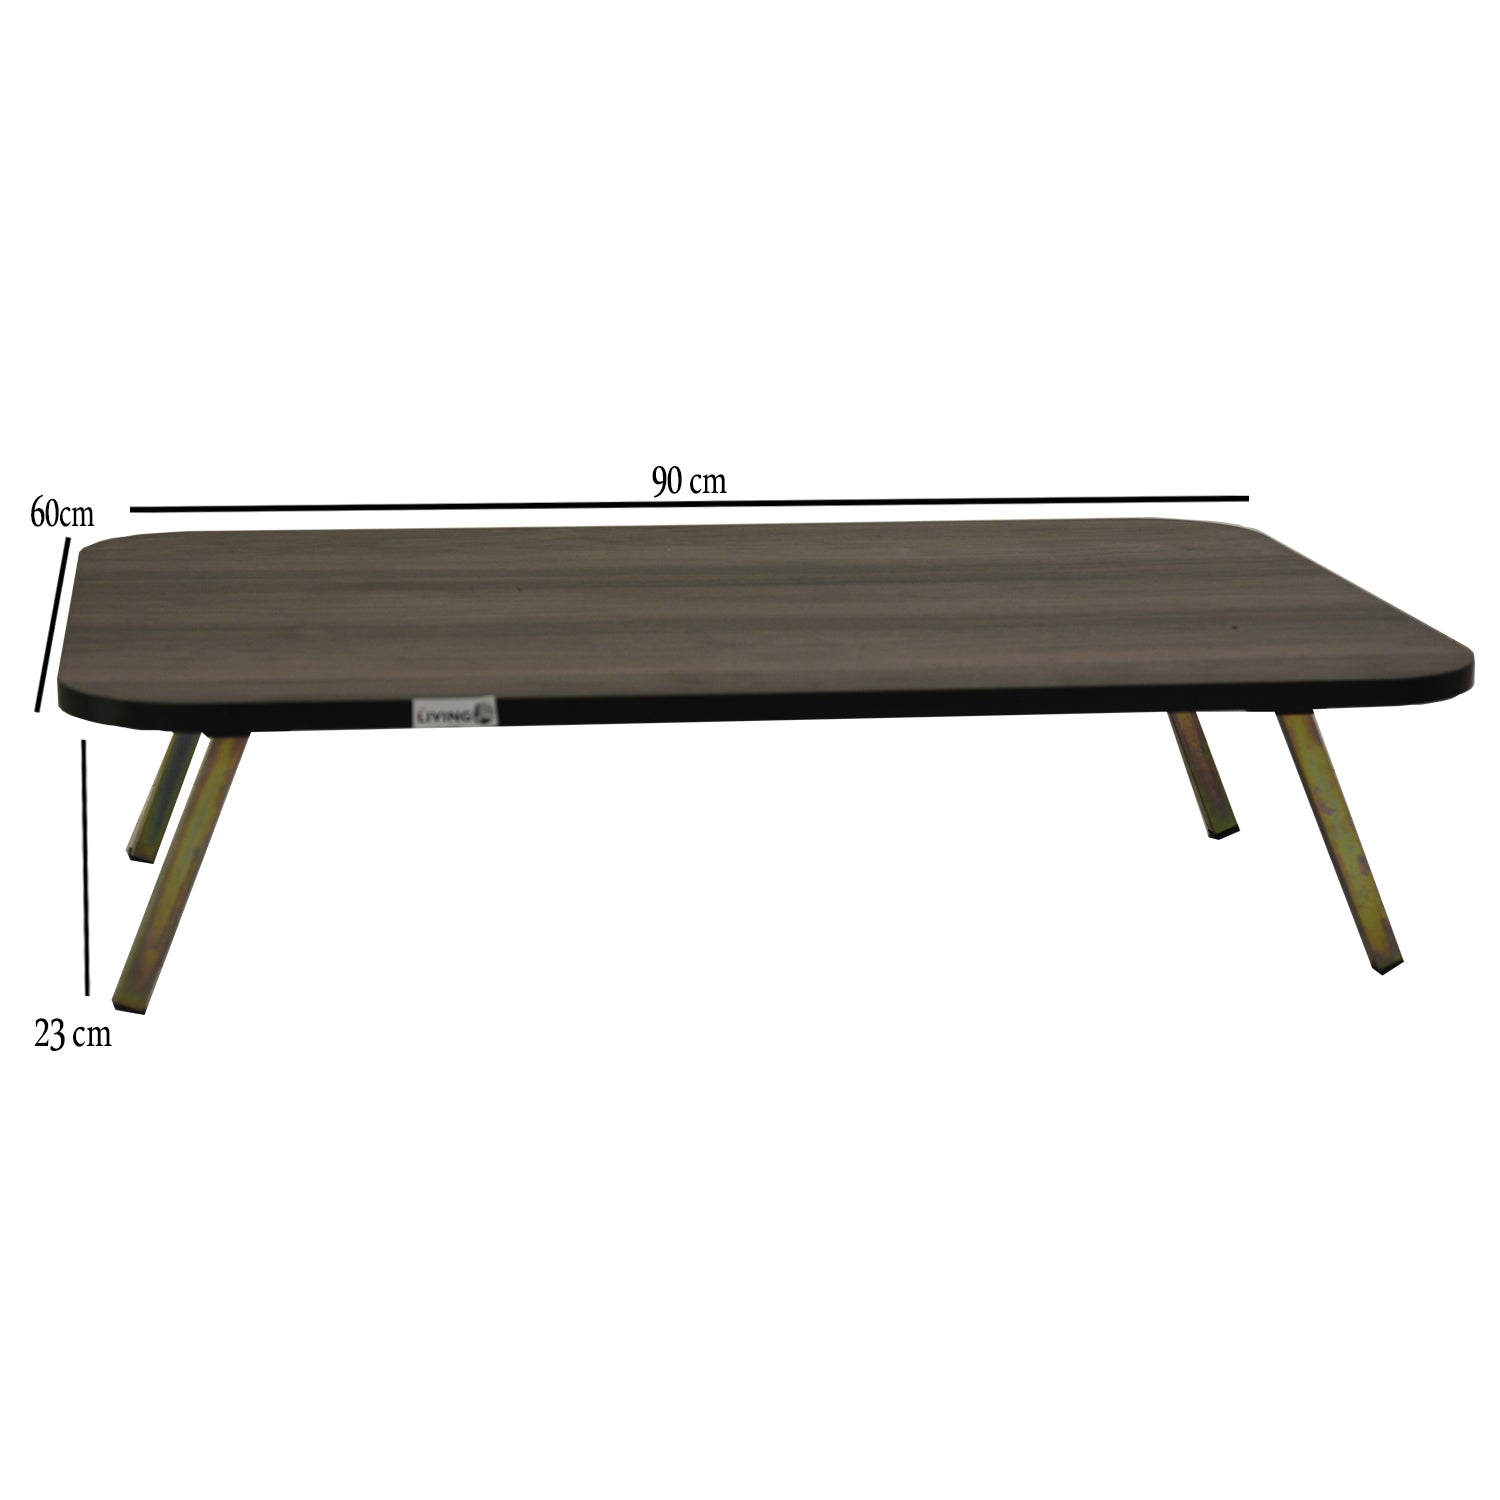 طاولة خشب أرضية مستطيلة قابلة للطي مقاس 60*90 سم